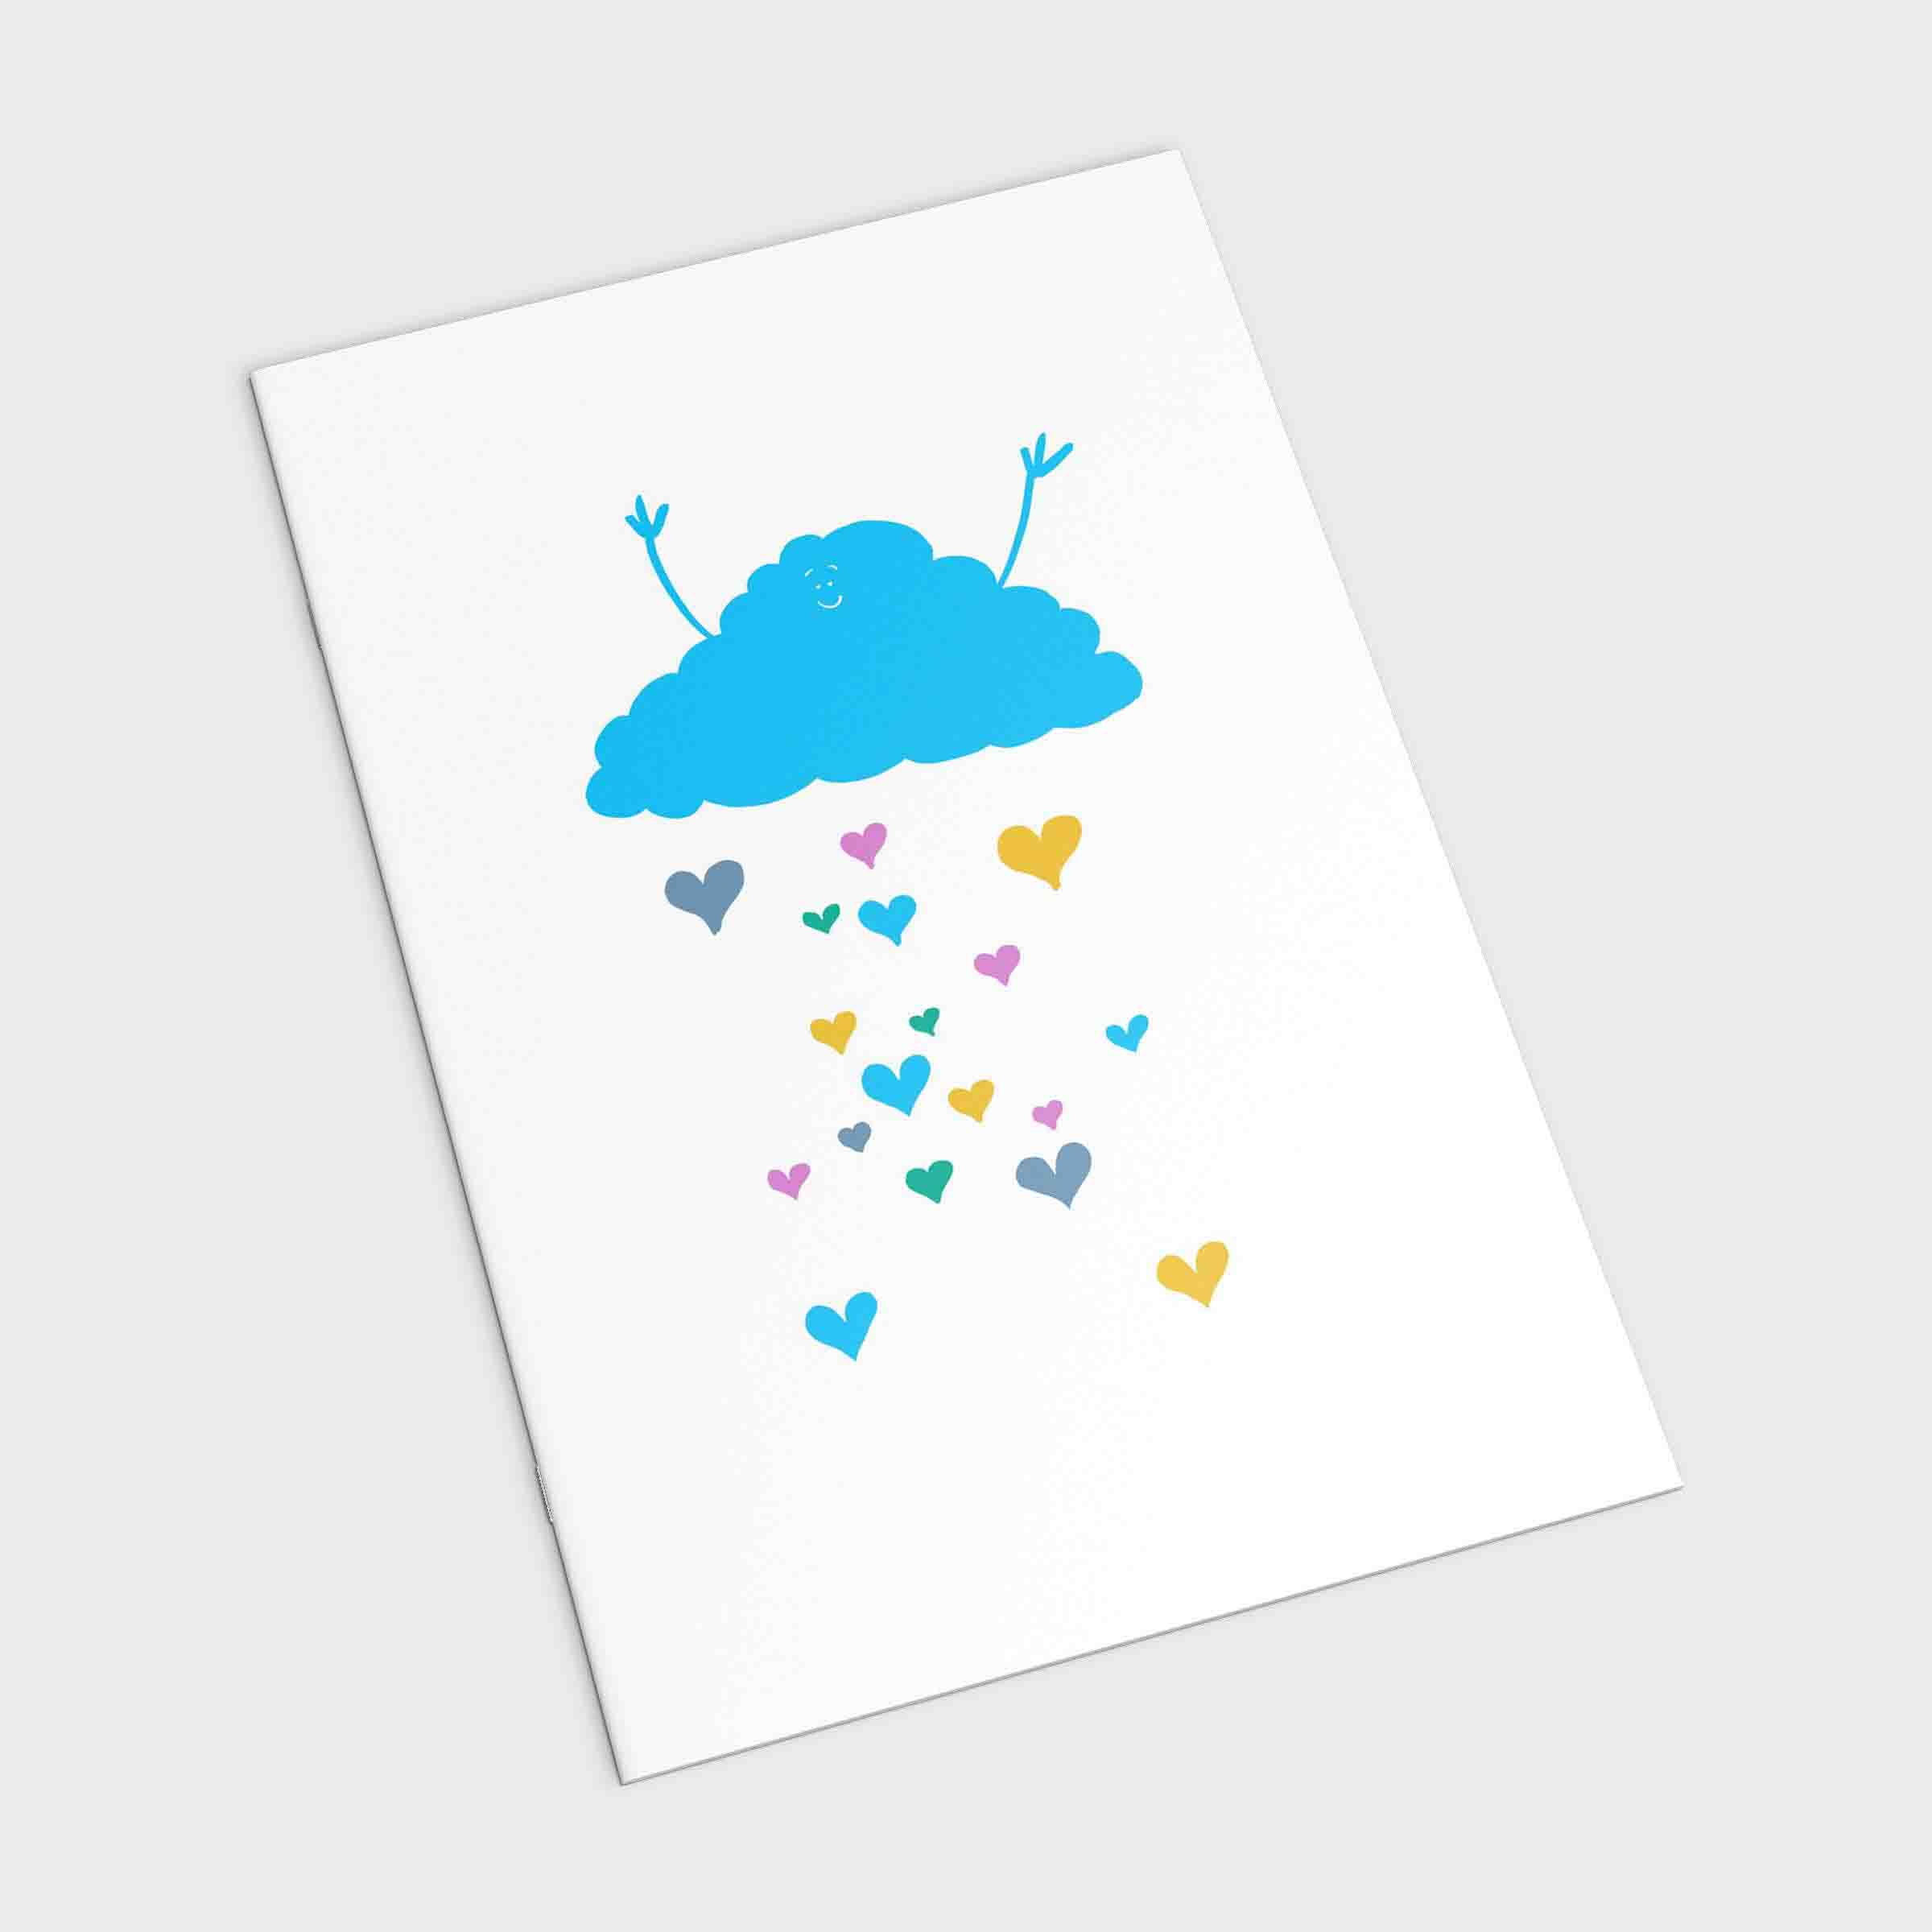 Richard Darani Notebooks & Notepads A5 Blue Rain Cloud Notebook